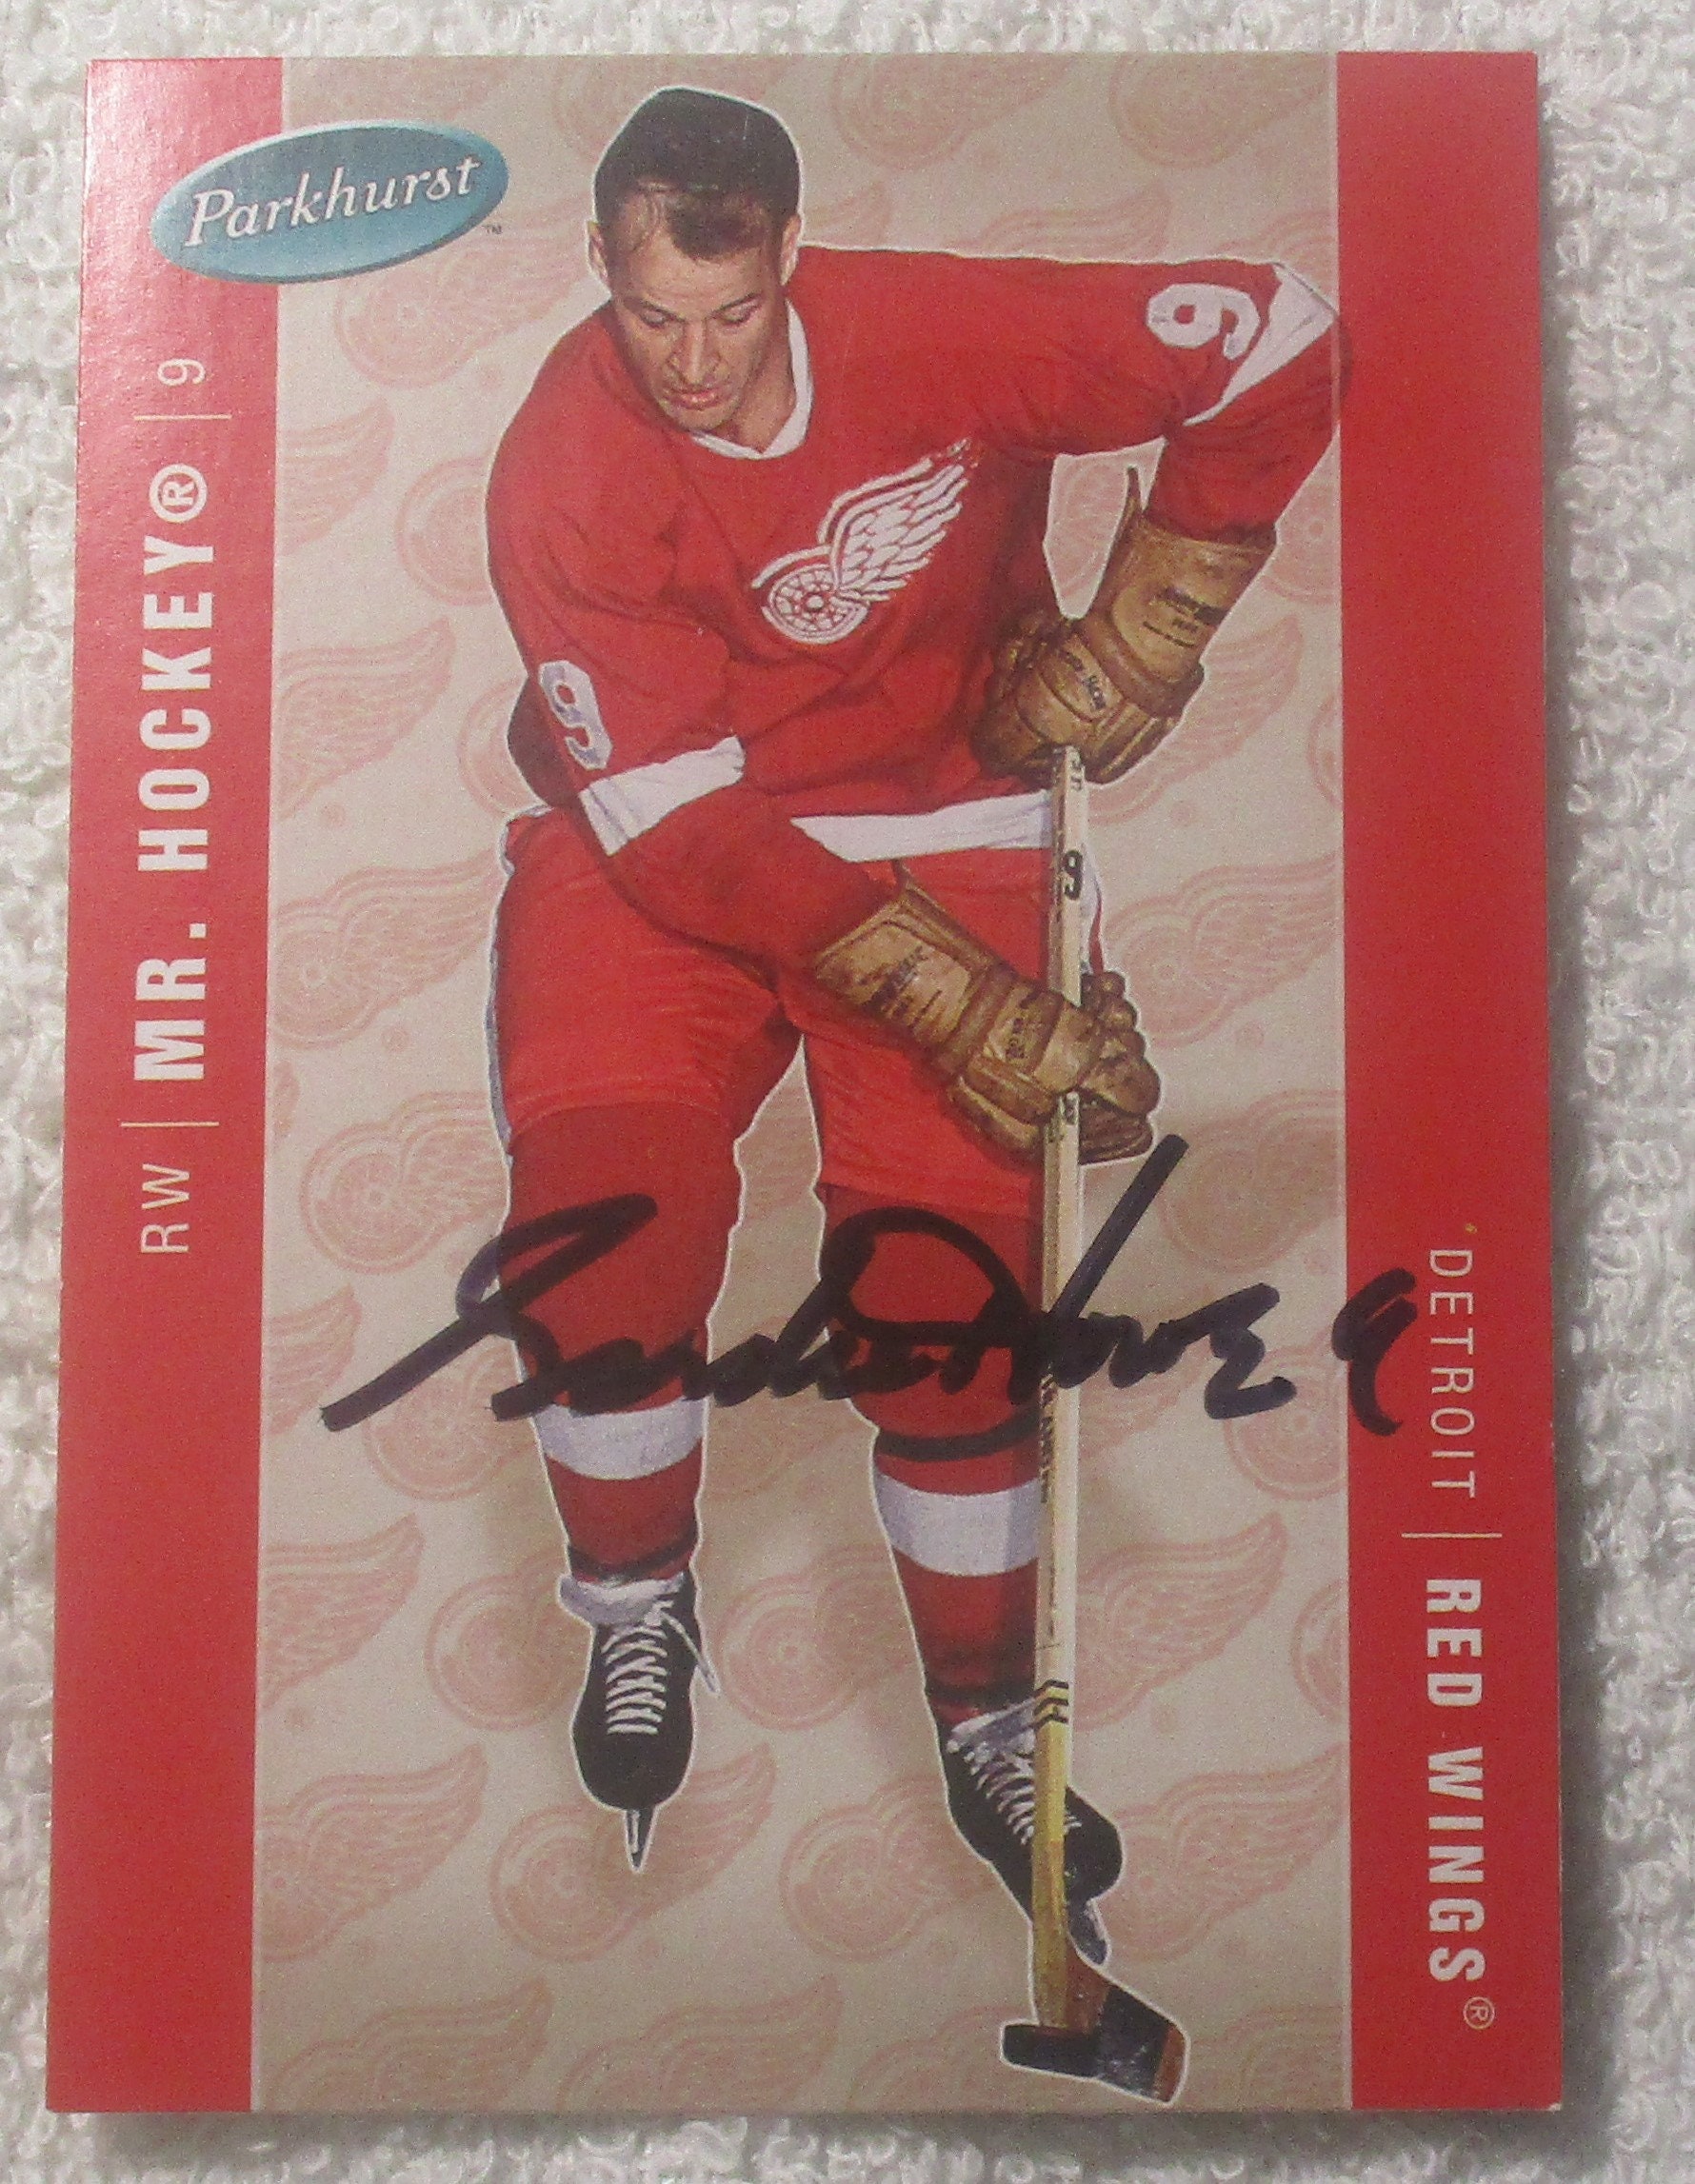 Gordie Howe Mr Hockey Autographed Detroit Red Wings Vintage Jersey